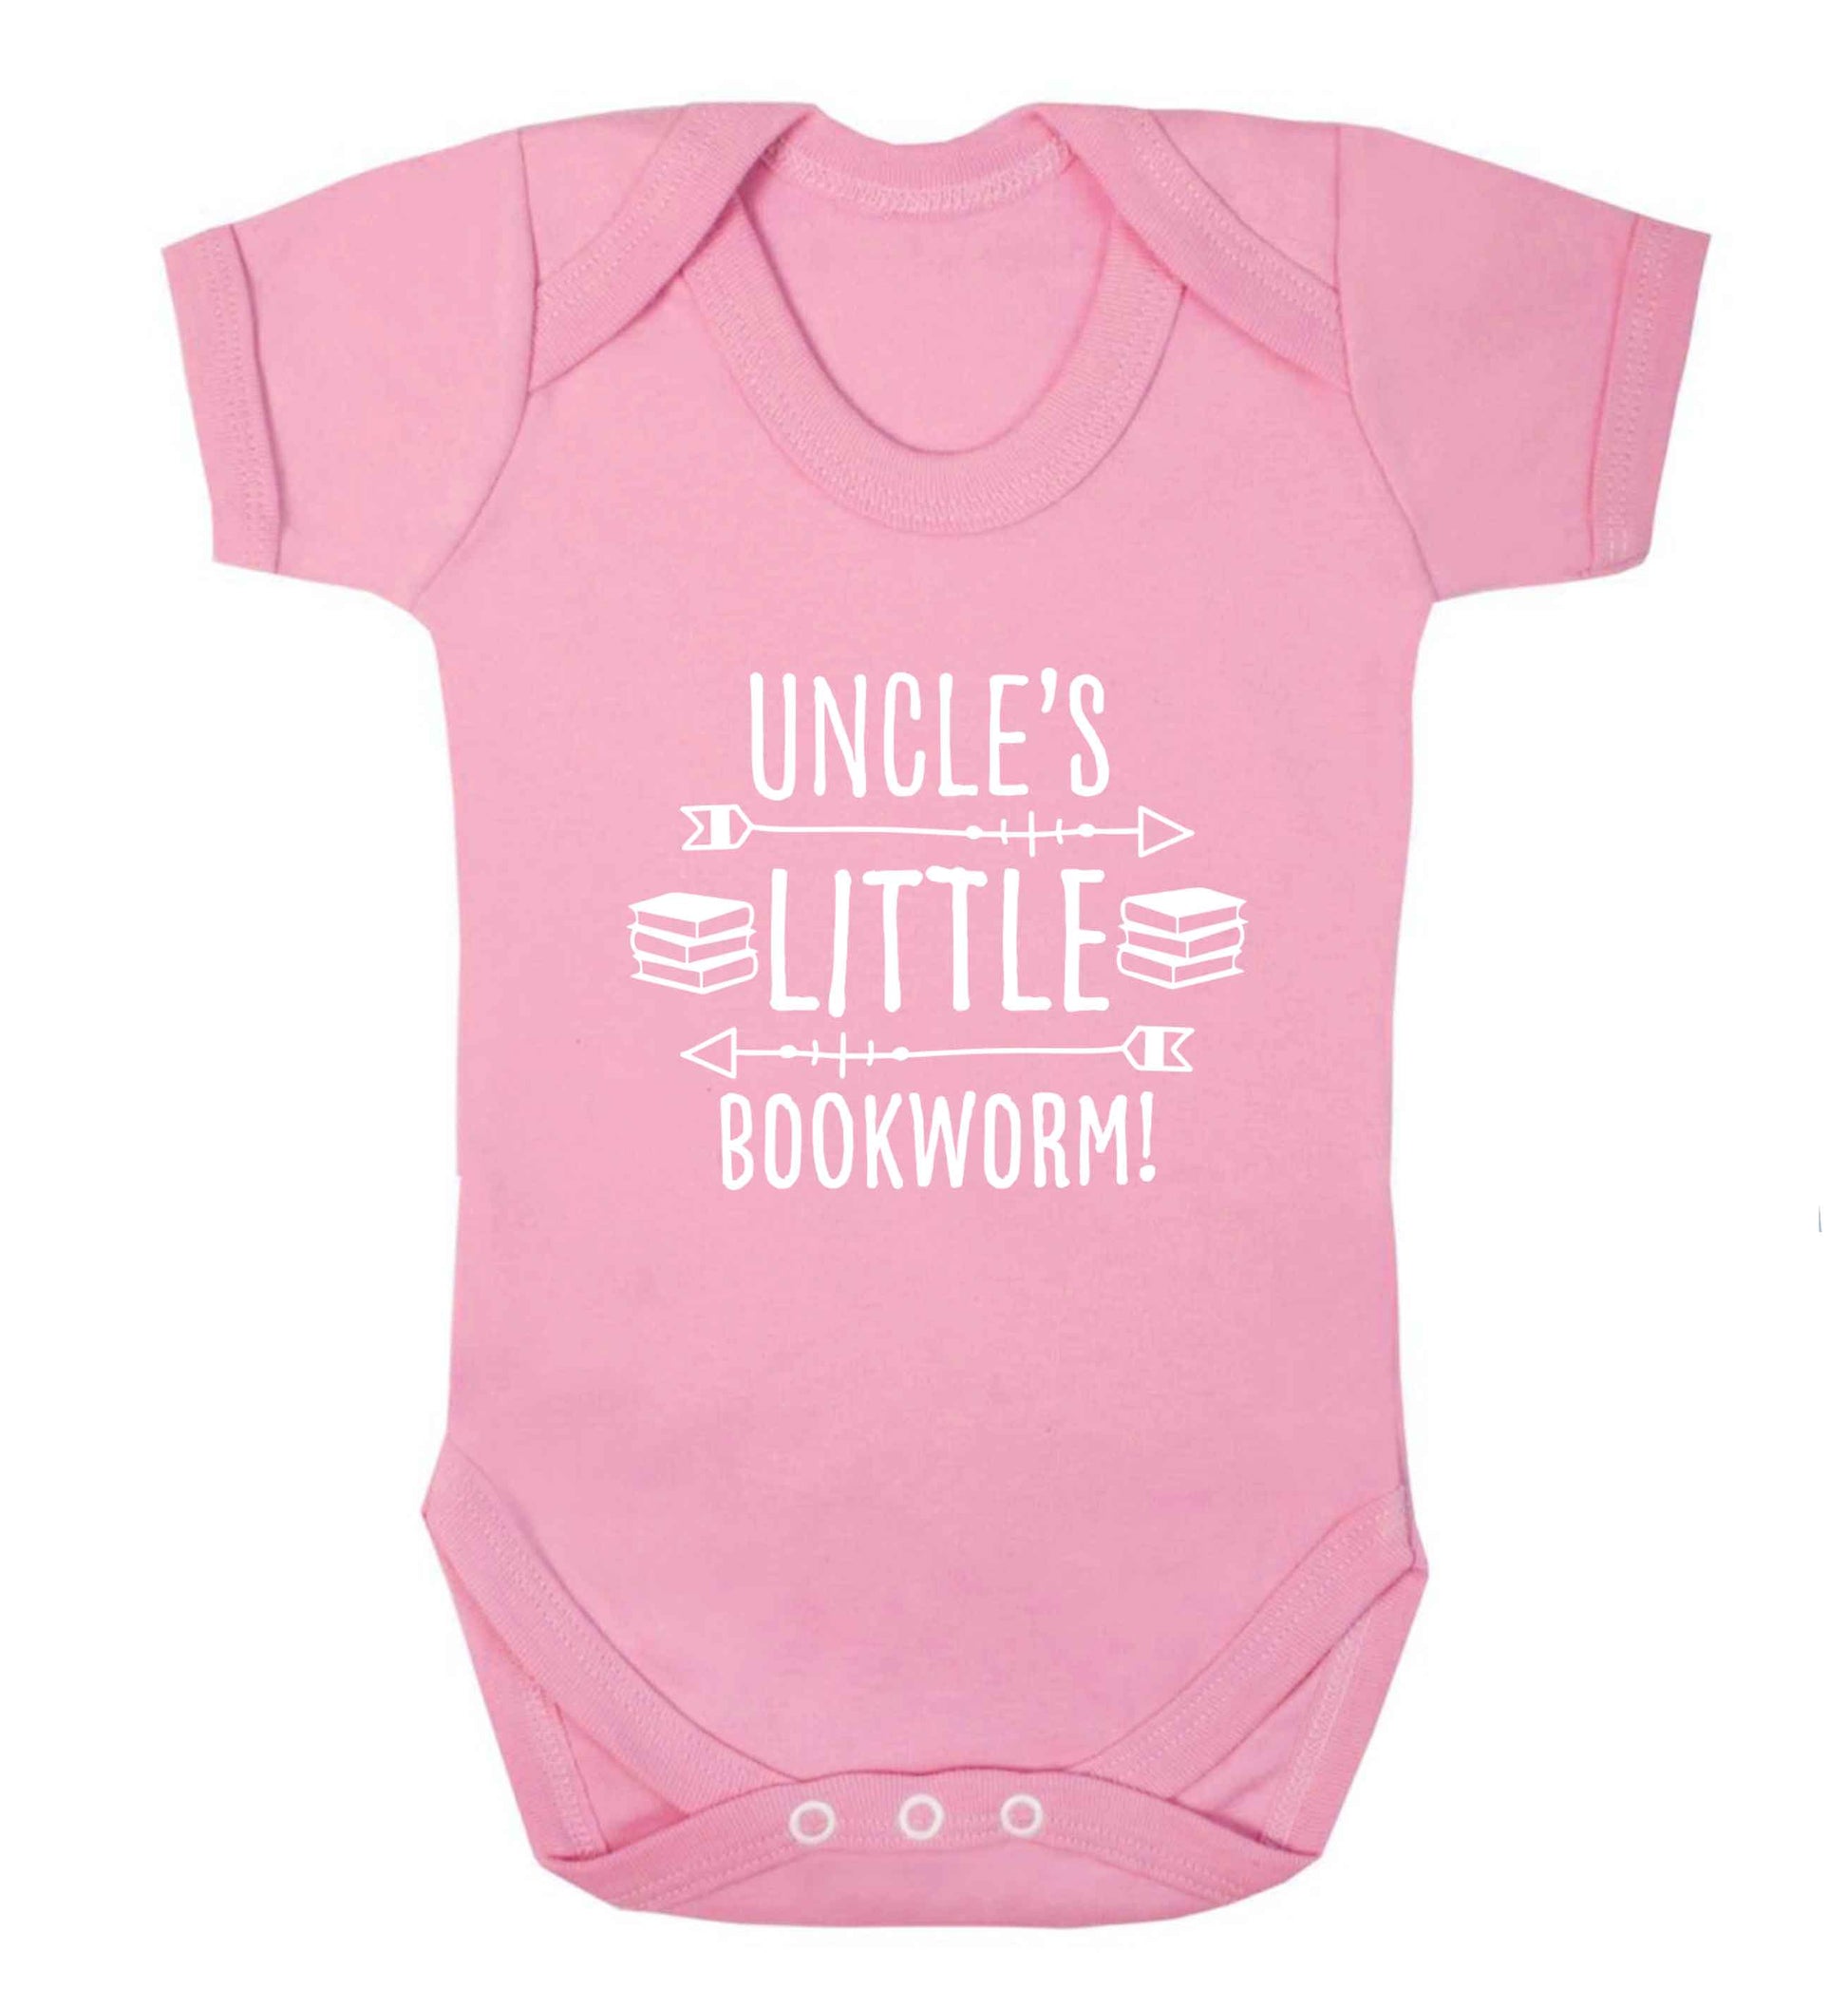 Uncle's little bookworm baby vest pale pink 18-24 months